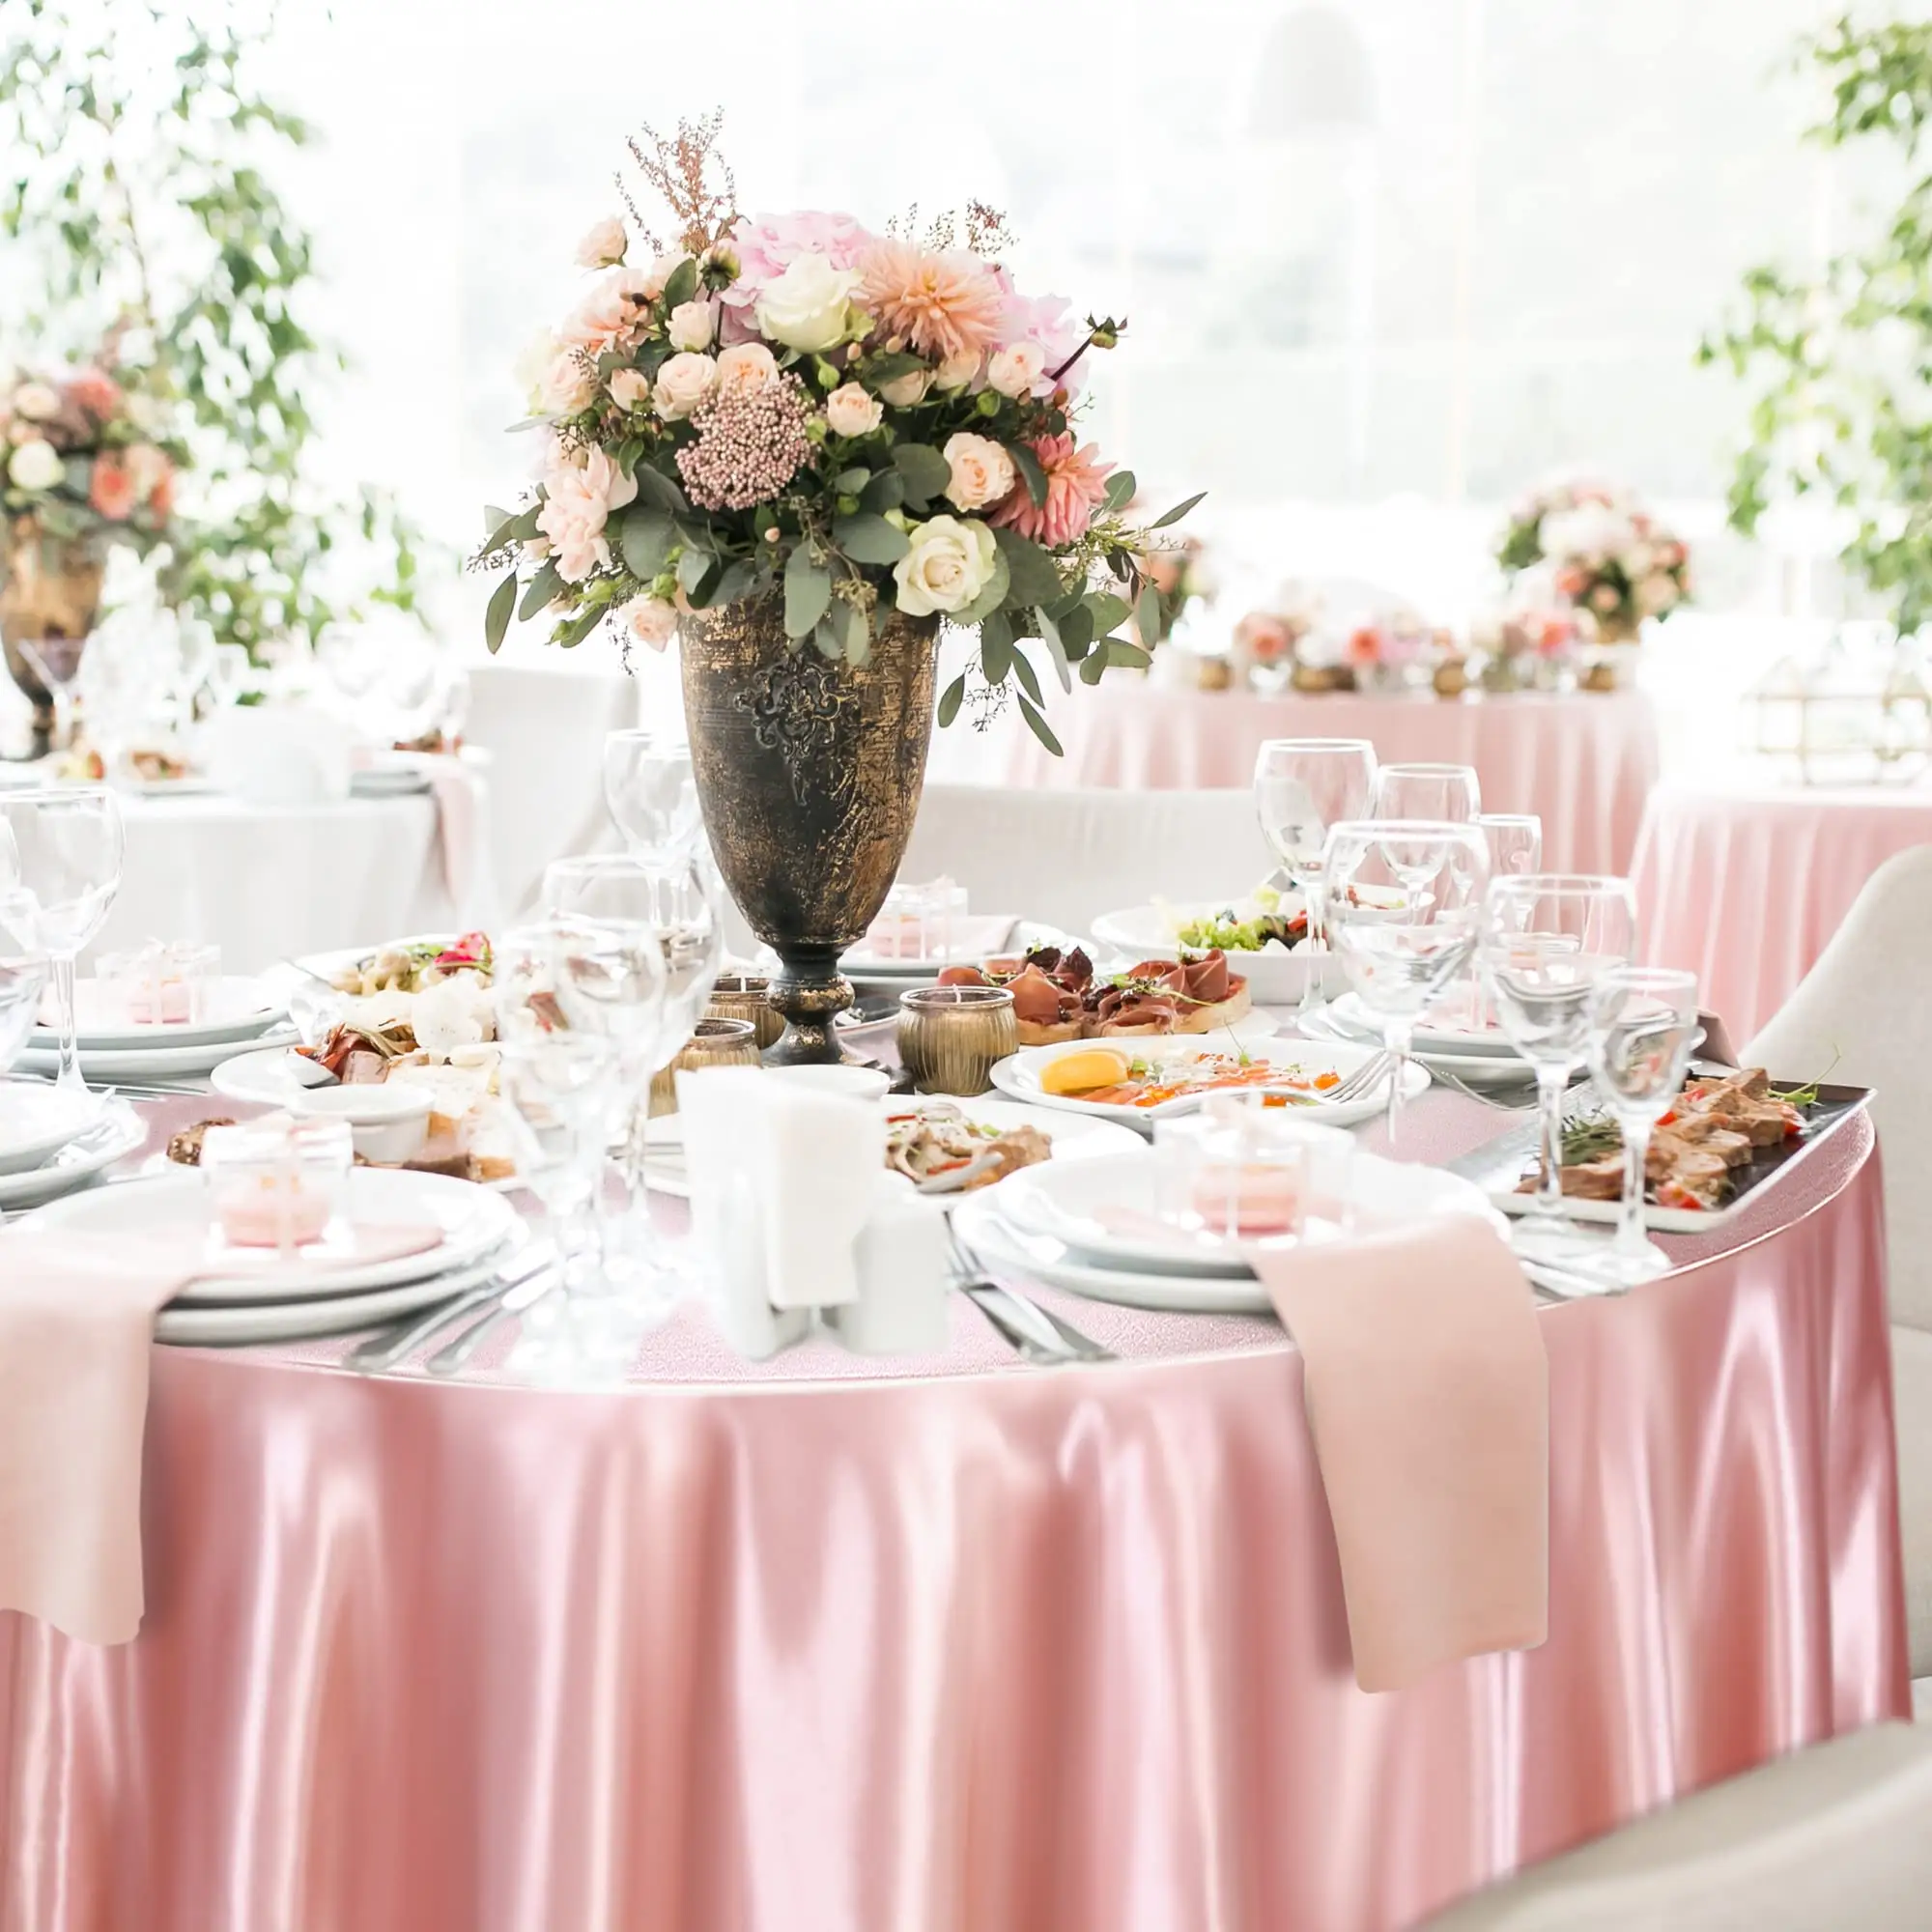 305 cm/120 Zoll Durchmesser hochwertiges roségoldfarbenes rundes Satin-Tischtuch für glamouröse Hochzeitsfeiern und Feierlichkeiten